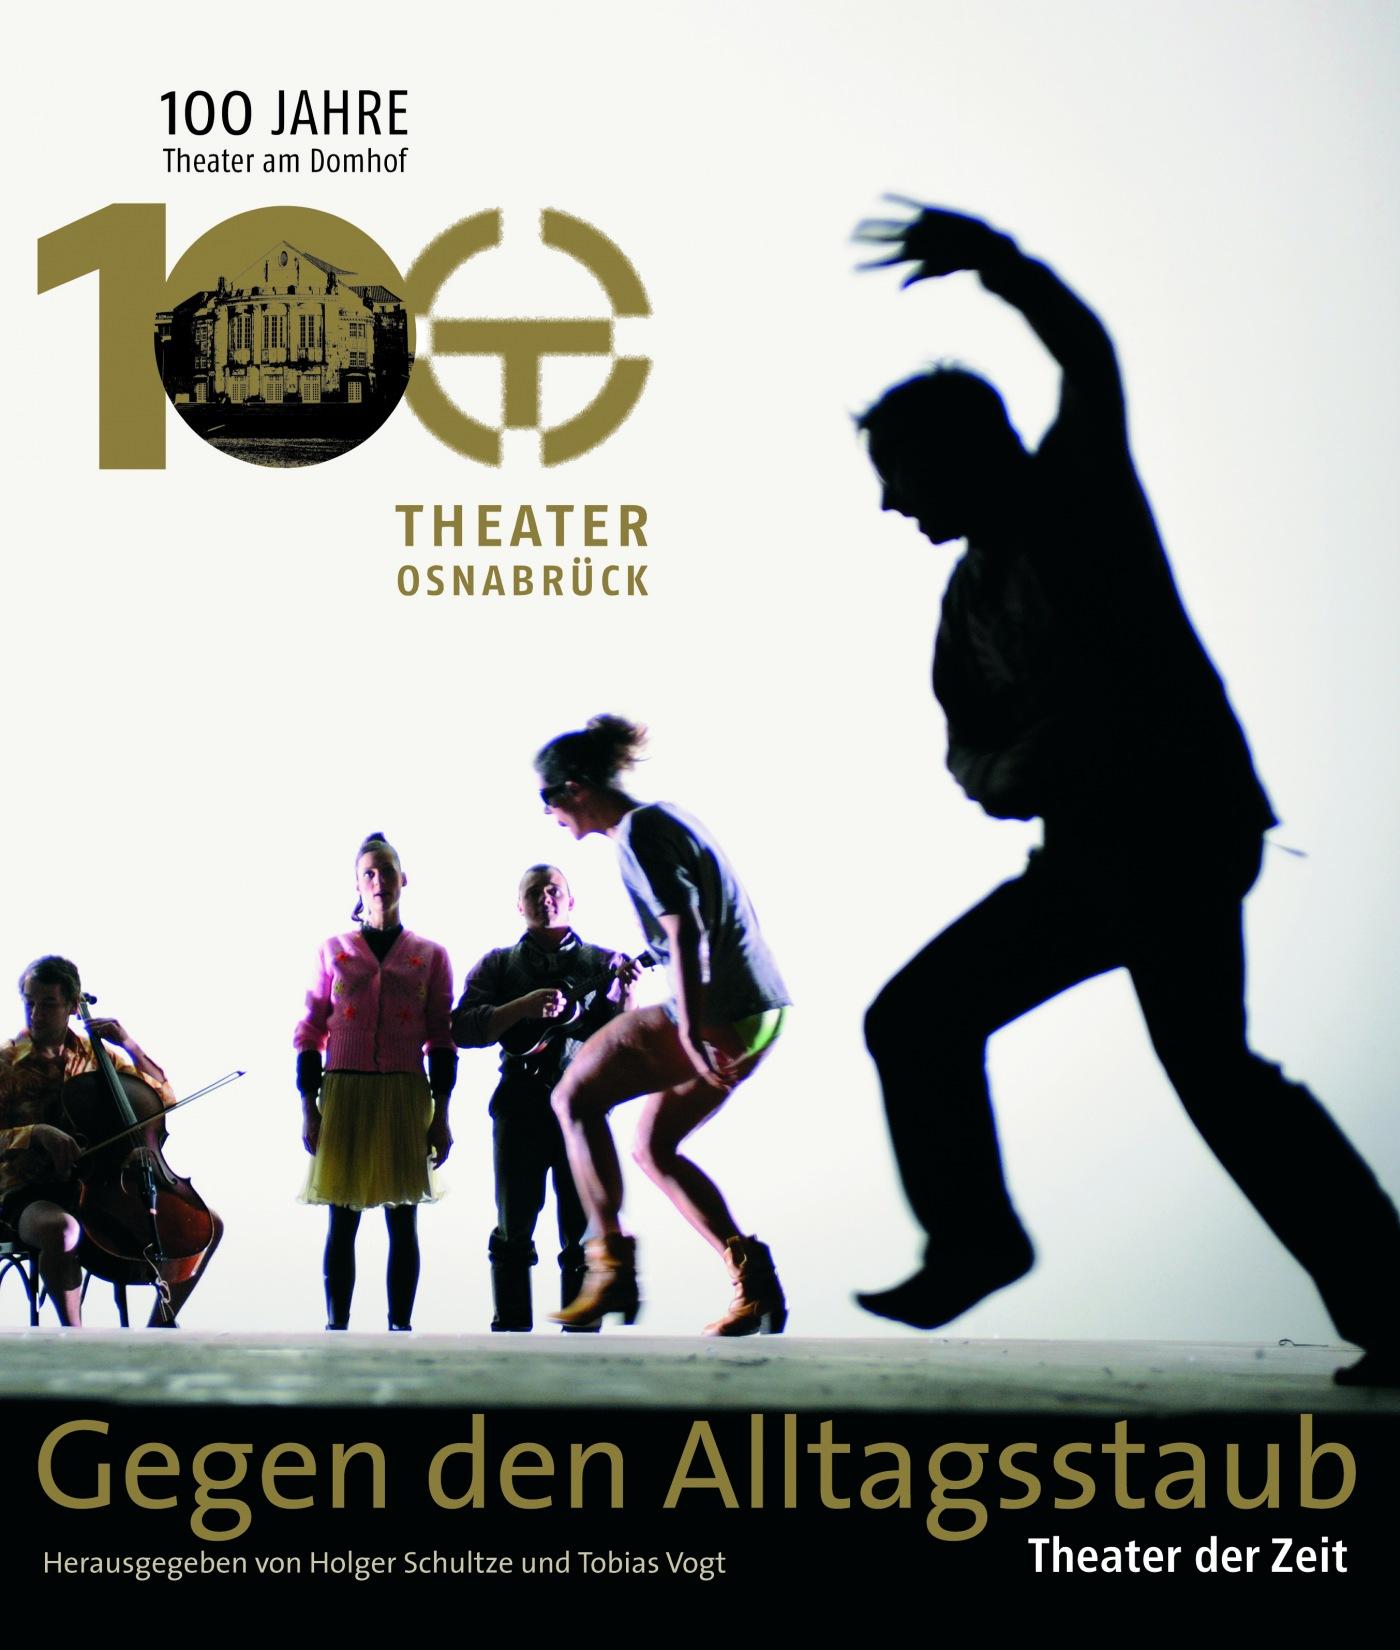 "Gegen den Alltagsstaub - Theater in Osnabrück"